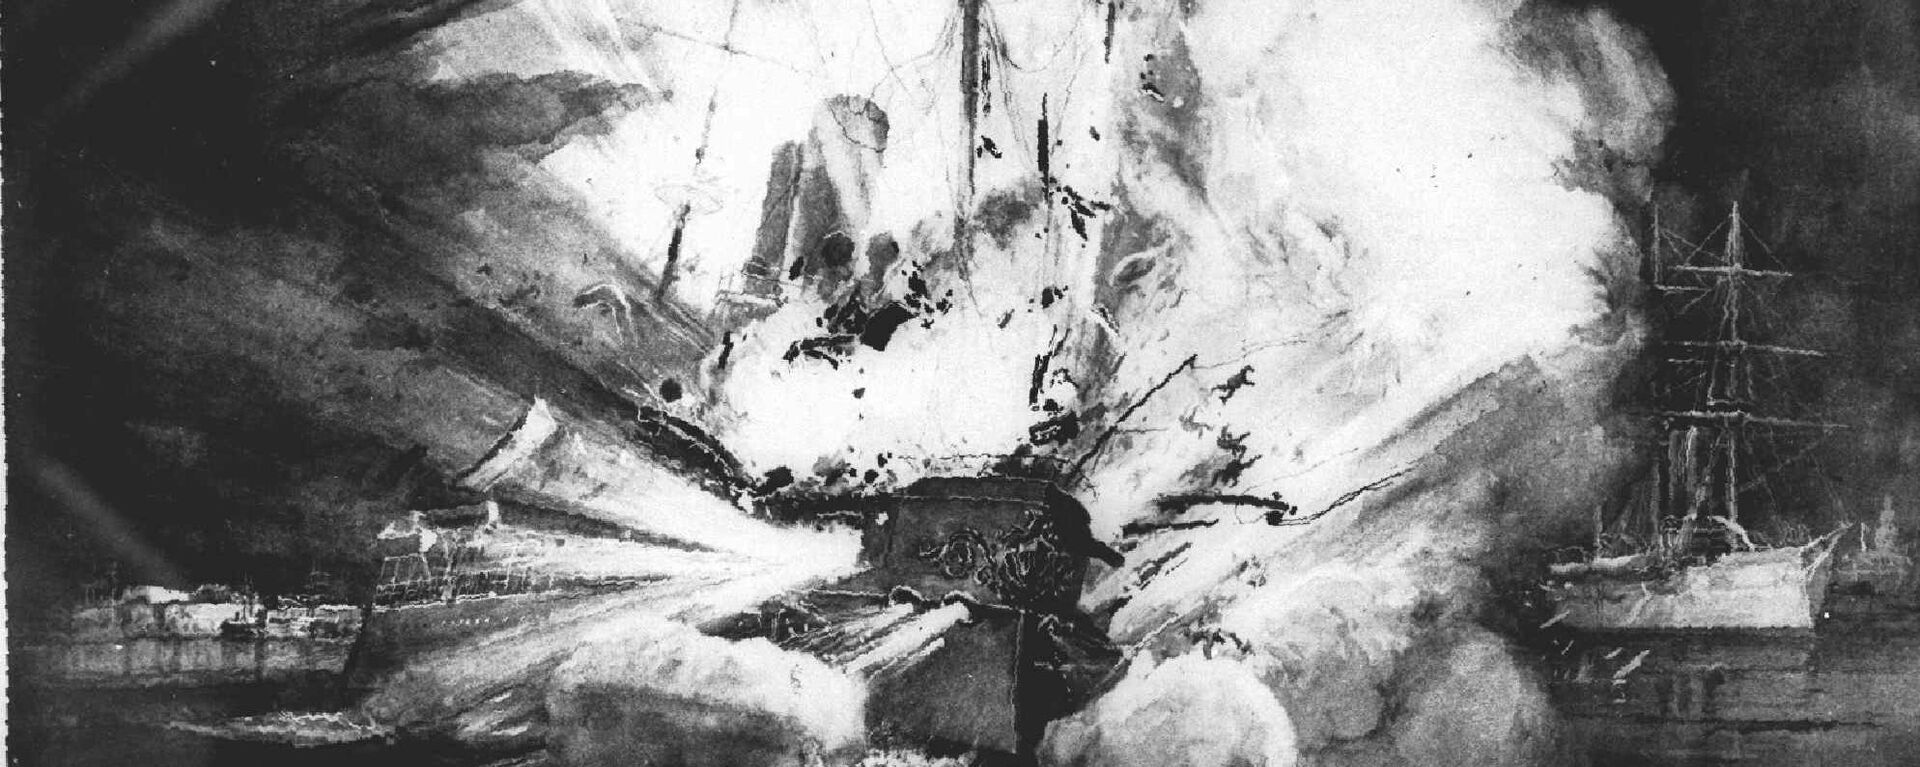 La explosión que destrozó al acorazado estadounidense Maine en el puerto de La Habana, Cuba, el 15 de febrero de 1898, fue dramáticamente retratada en este boceto por un artista de una revista estadounidense de la época. - Sputnik Mundo, 1920, 15.02.2019